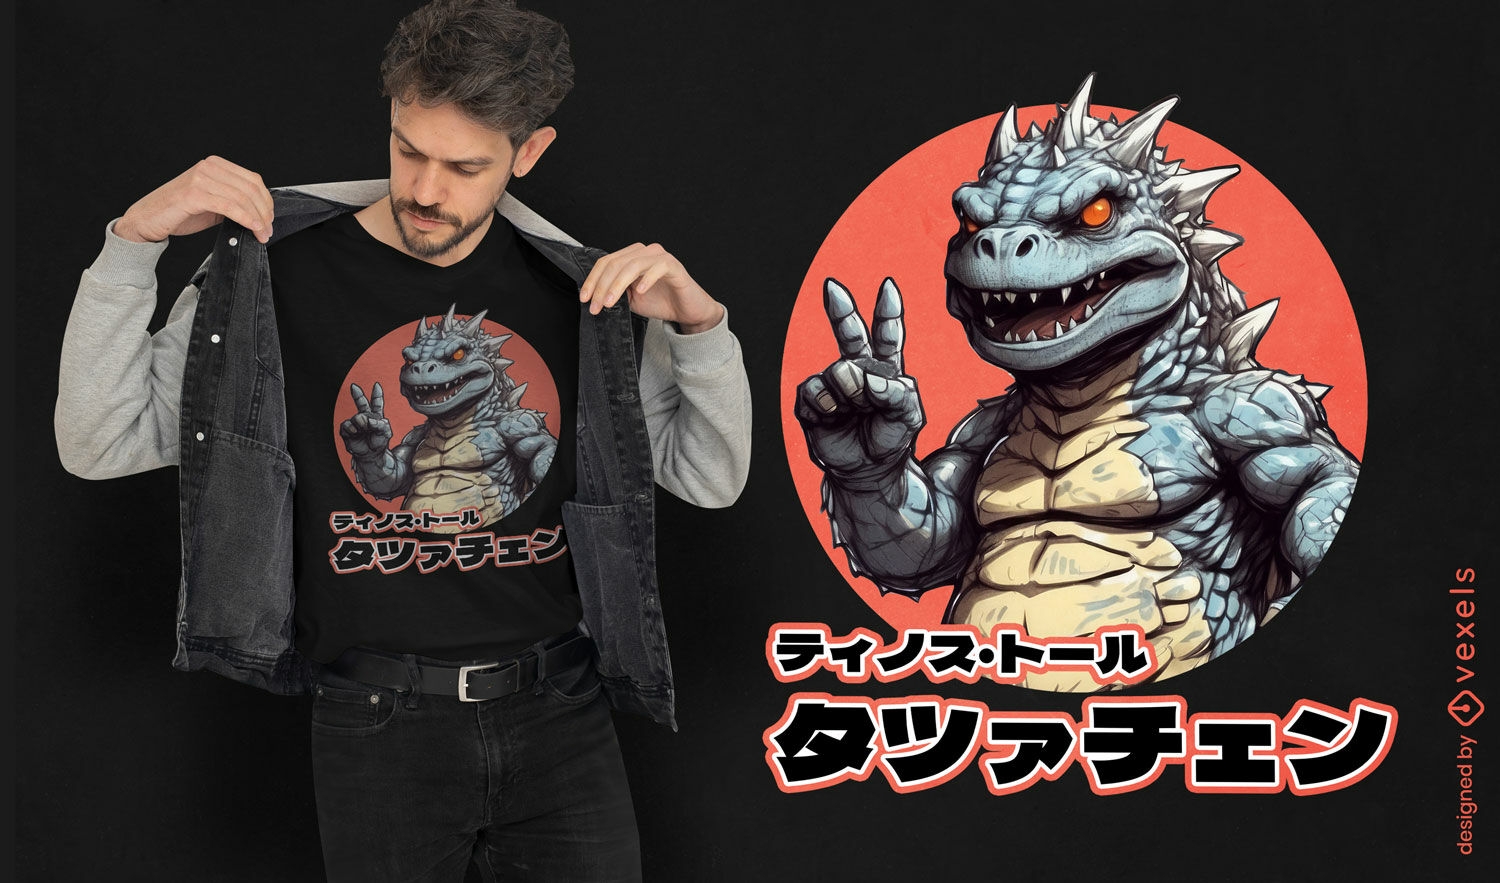 Japanisches Godzilla-Cartoon-T-Shirt-Design